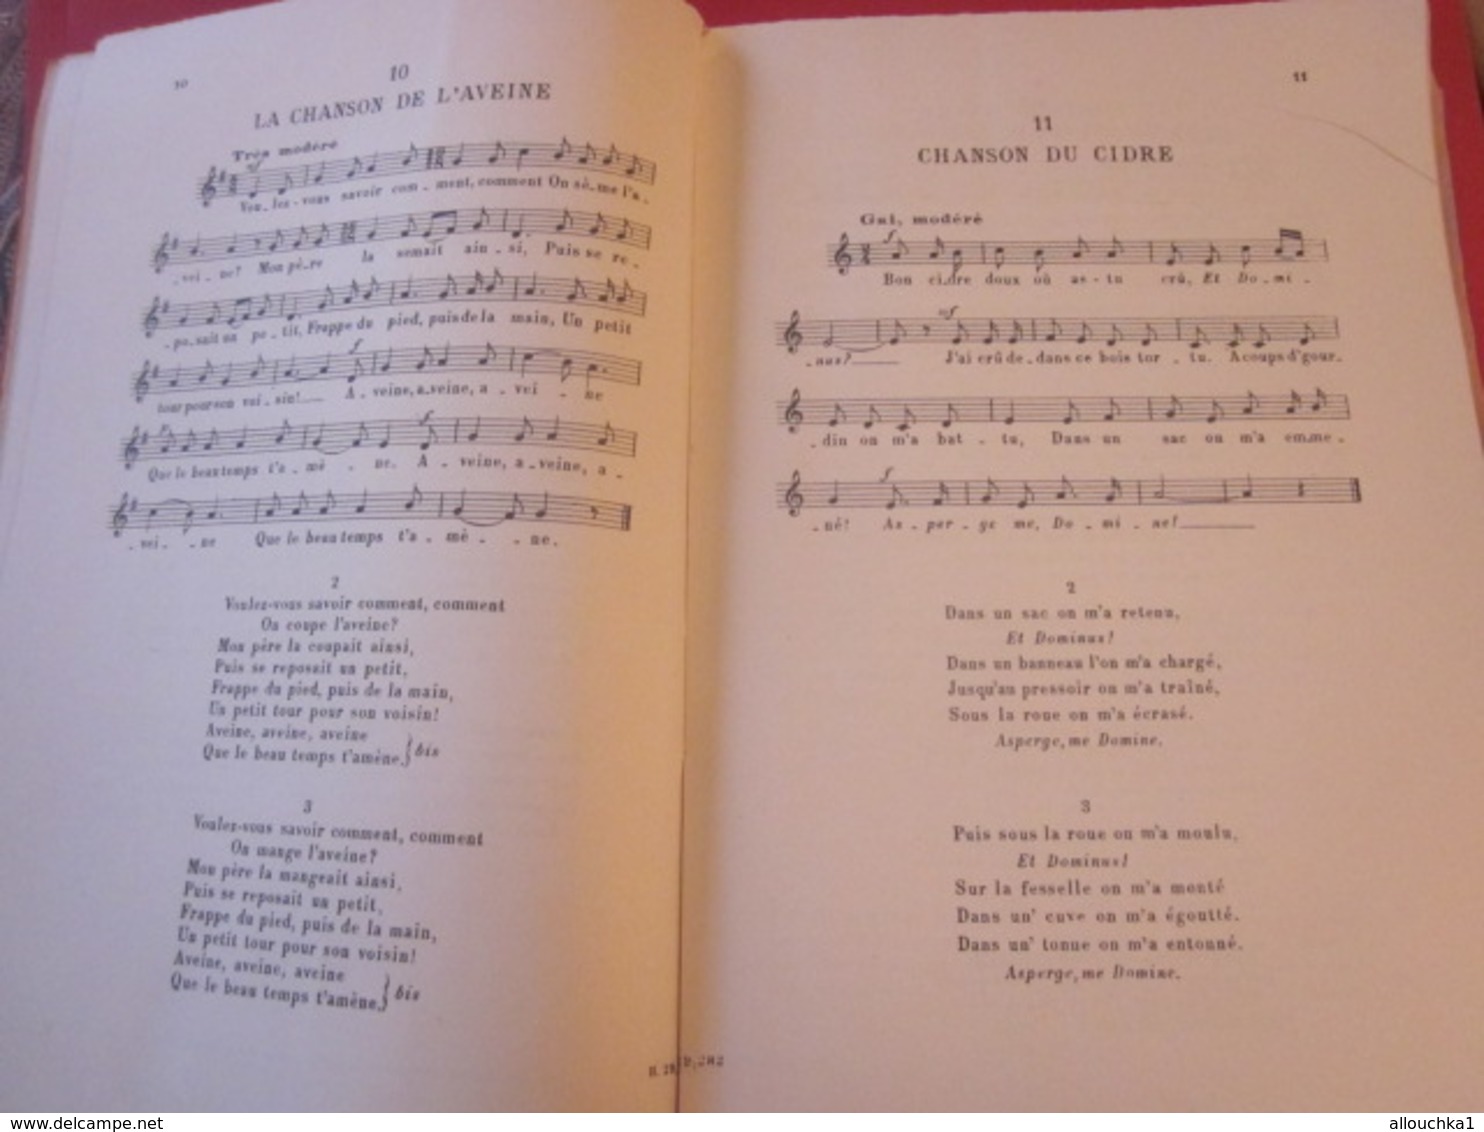 1946 ANTHOLOGIE CHANT SCOLAIRE CHANSONS POPULAIRES FRANÇAISES  ÎLE DE FRANCE-NORMANDIE  Musique-Textes Partitions